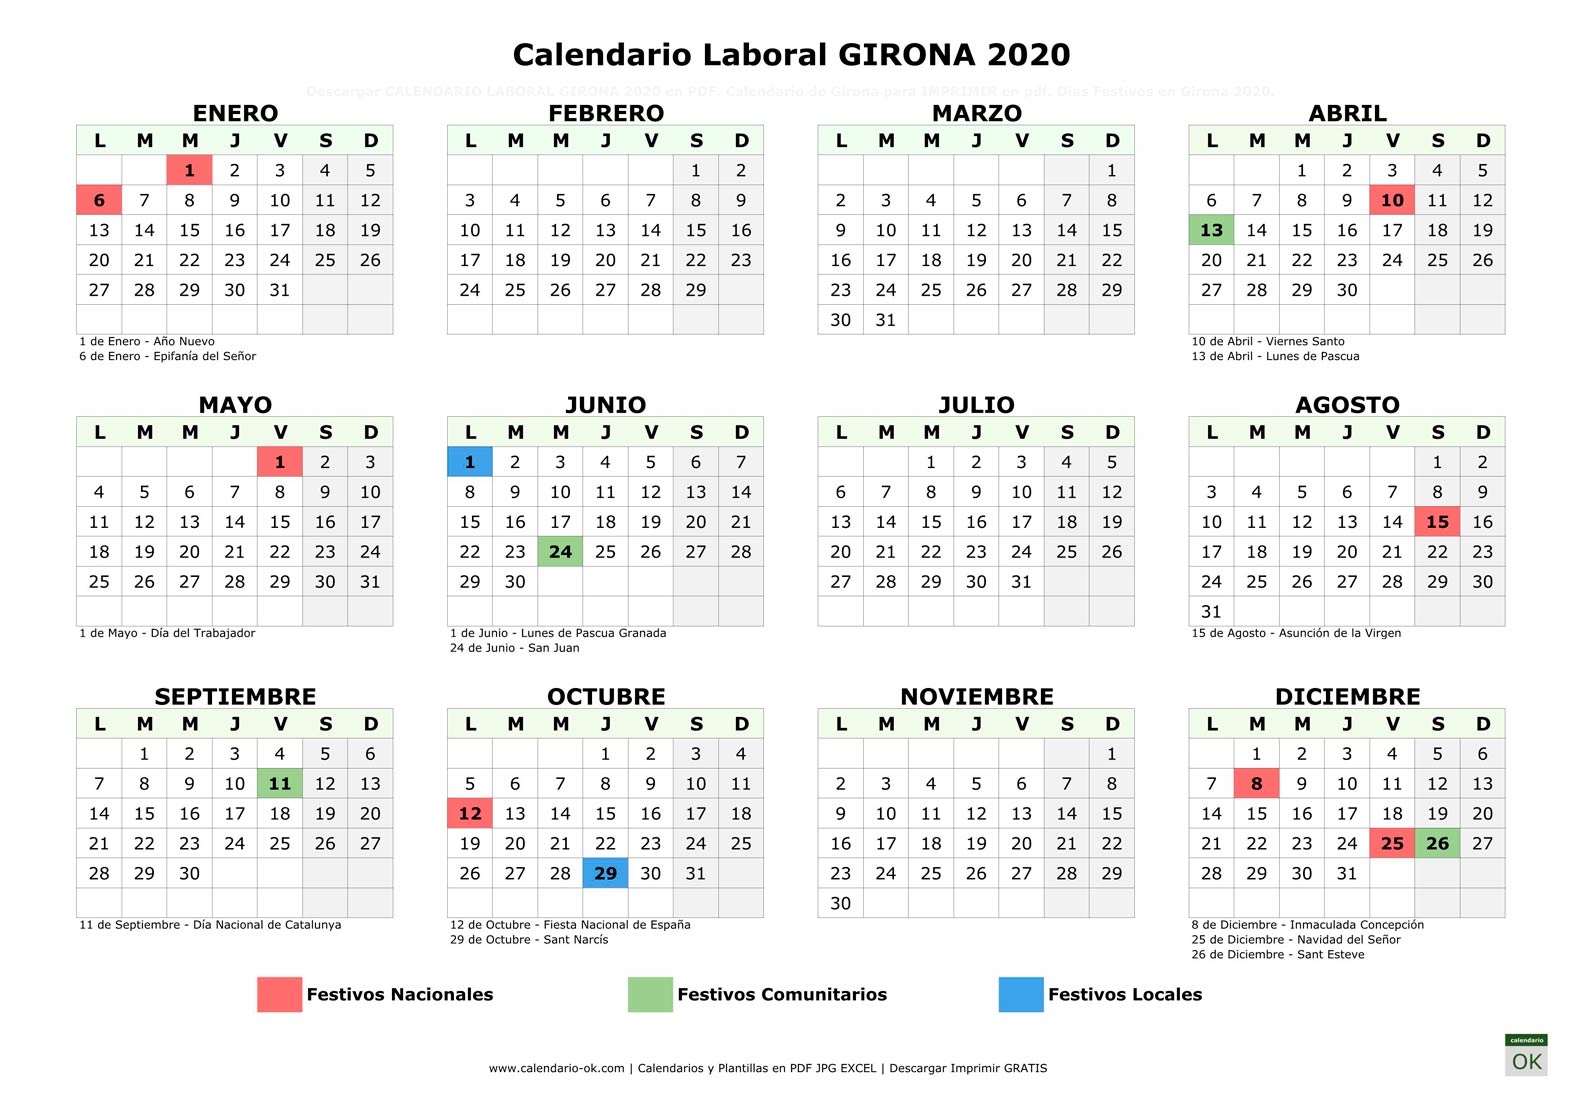 Calendario Laboral GIRONA 2020 horizontal